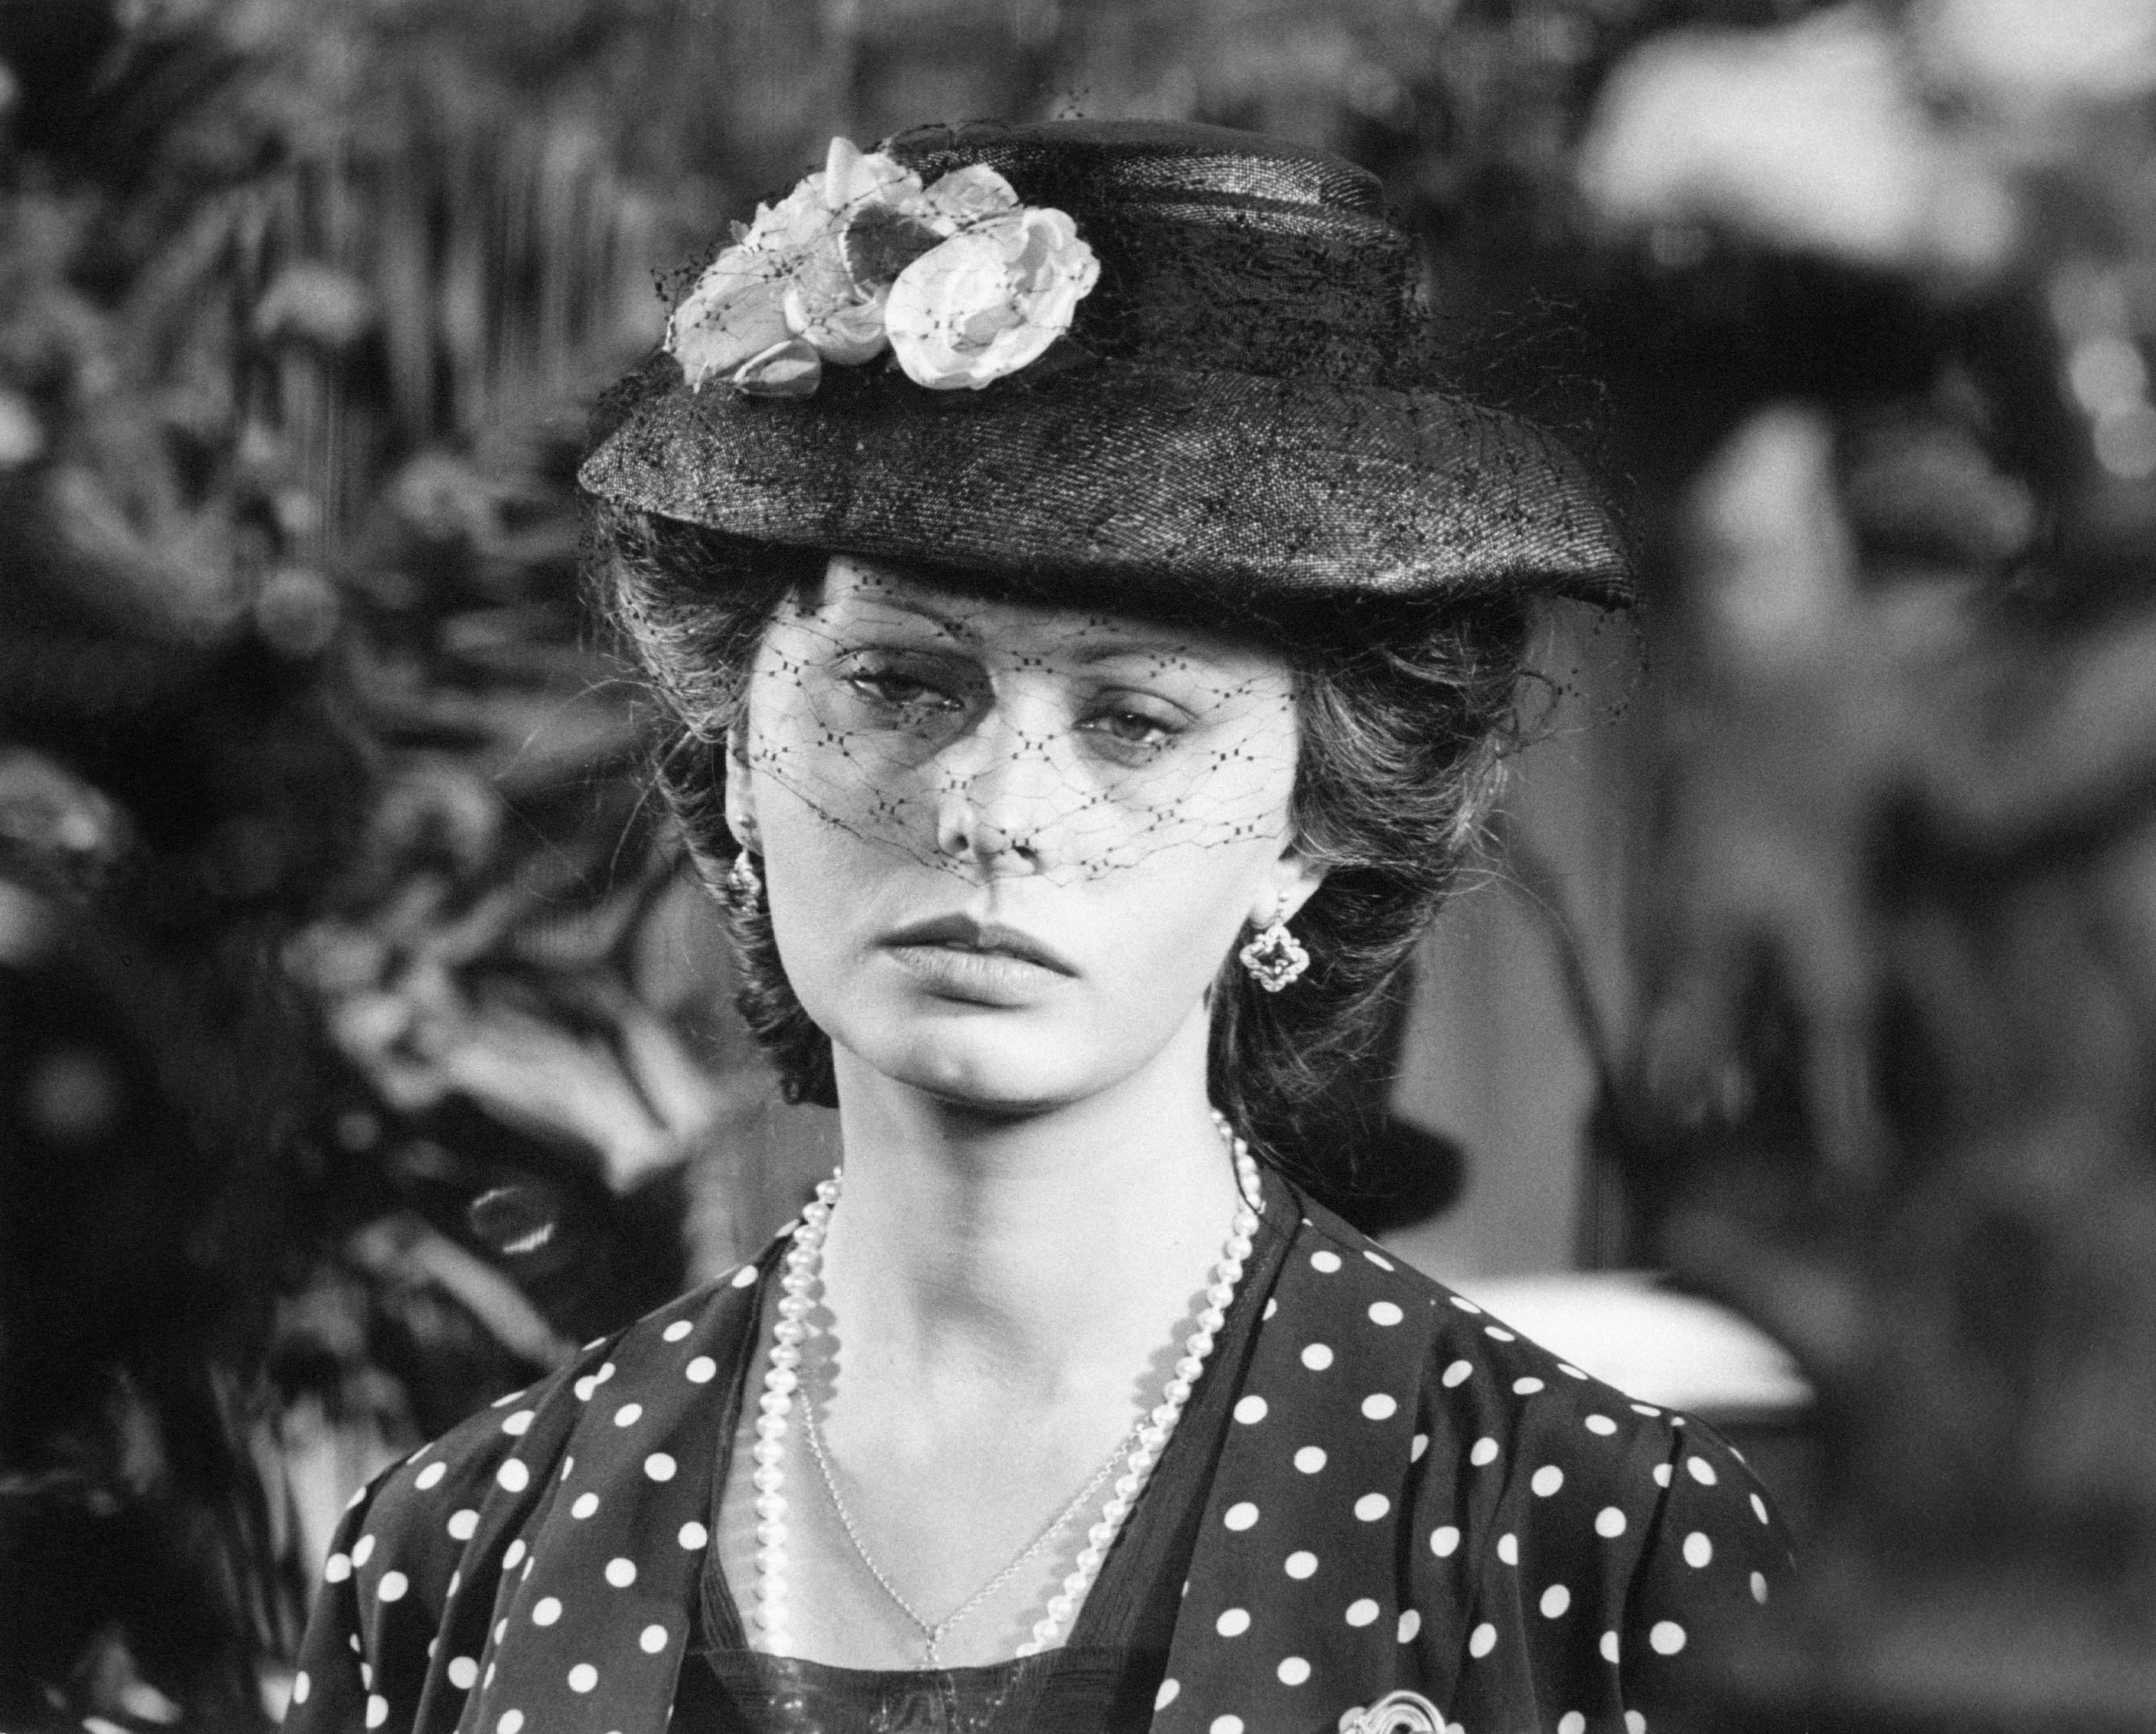 Sophia Loren au regard triste alors qu'elle interprète Filomena Marturano dans une scène du film "Mariage à l'italienne", à Naples, 1964. | Photo : Getty Images